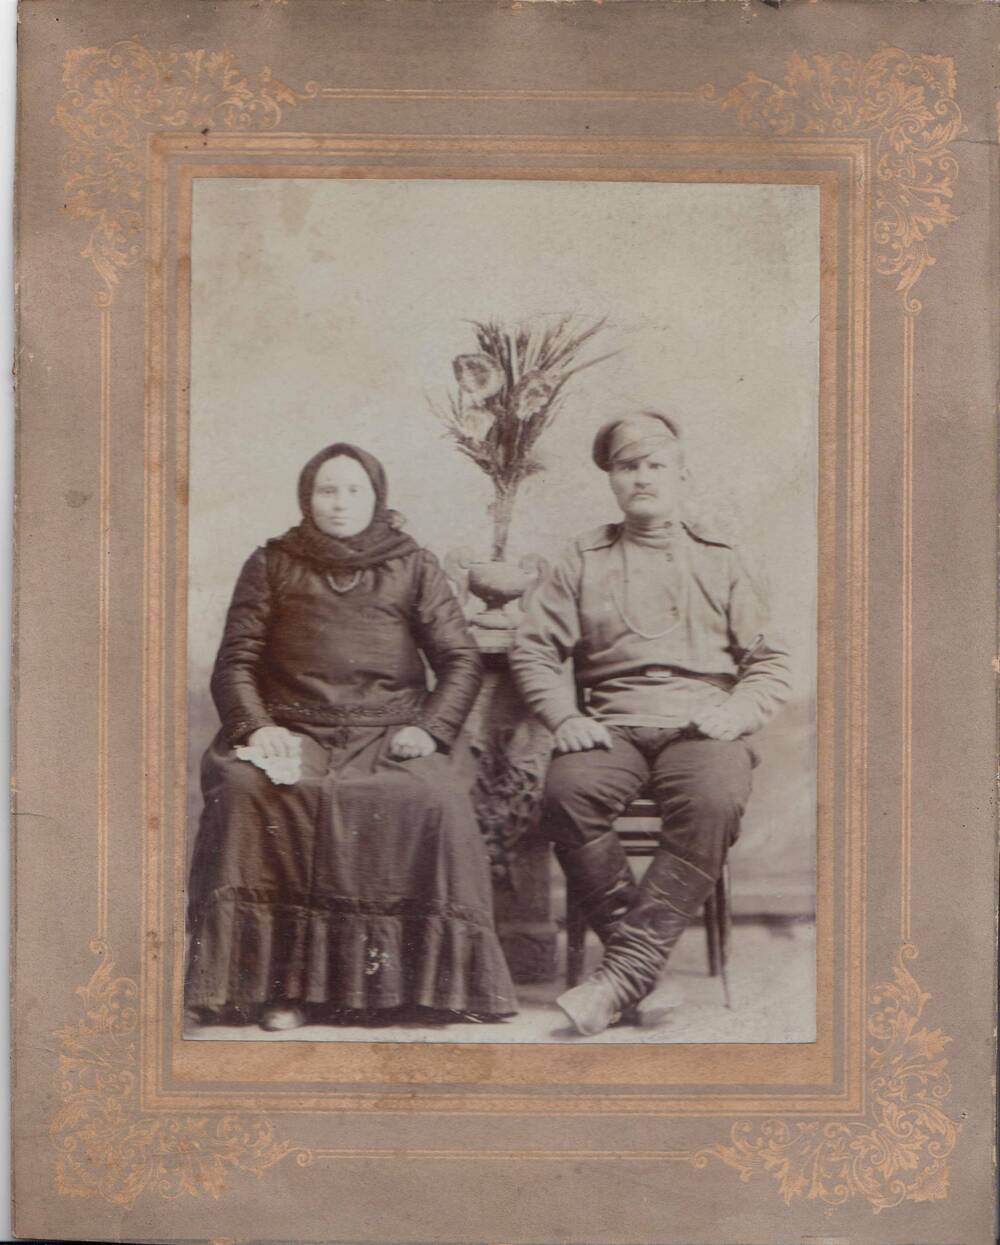 Фотография чернобелая с изображением Леонтьева Г. С. с женой.